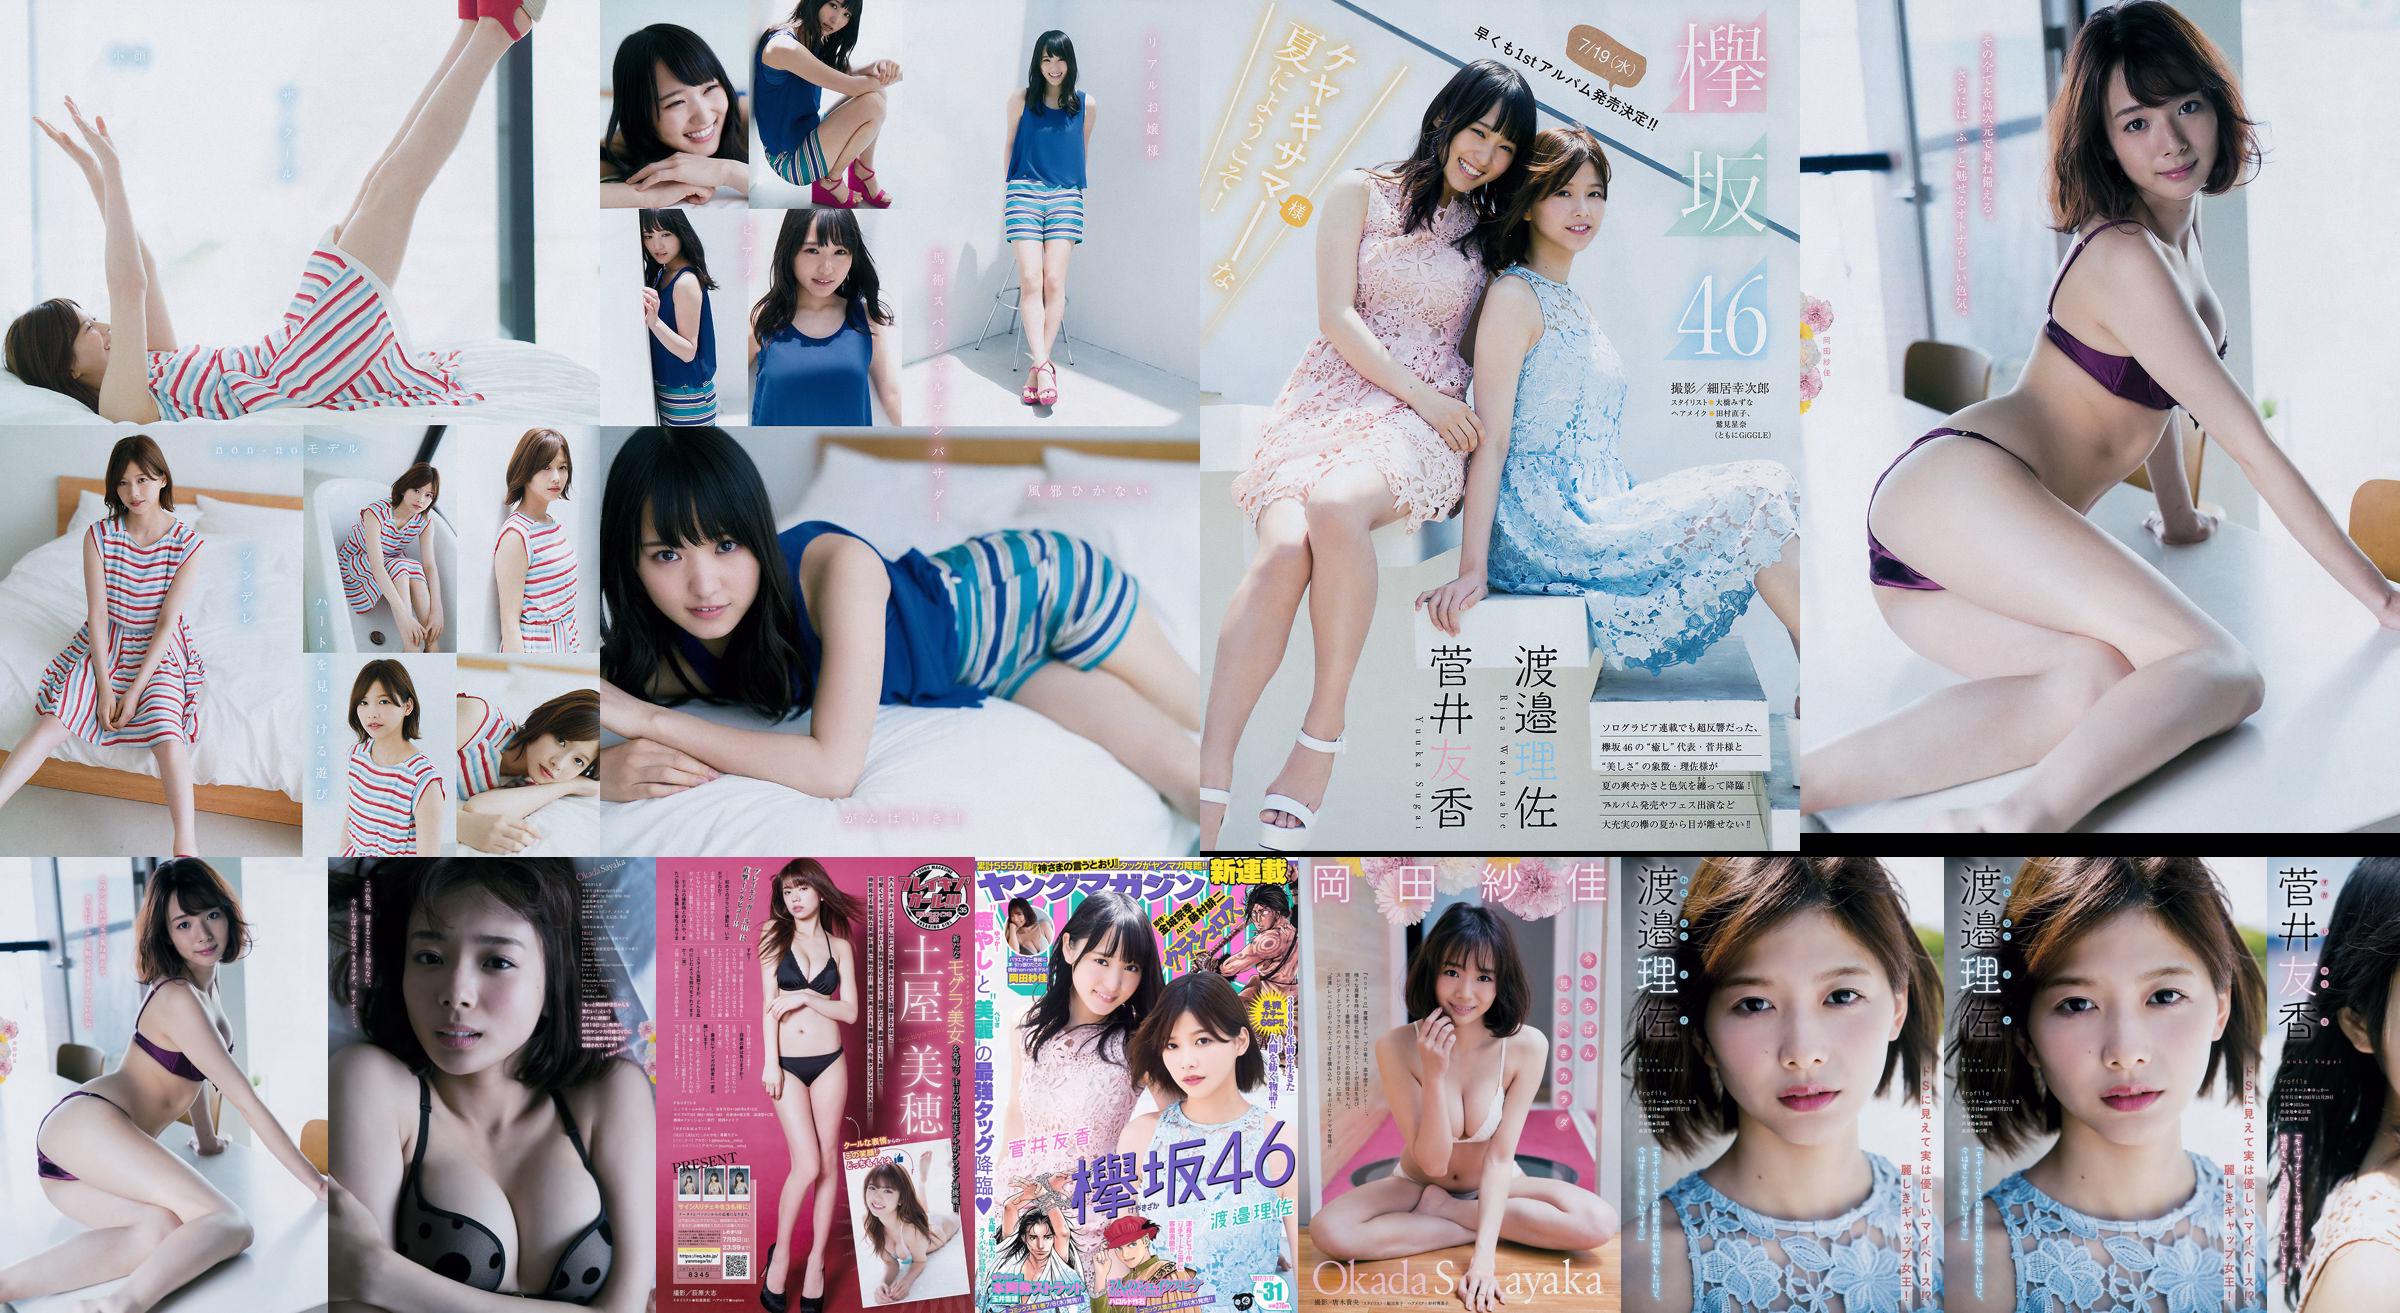 [Revista joven] Watanabe Risa, Sugai Yuka, Okada Saika 2017 No 31 Revista fotográfica No.fa83f5 Página 1